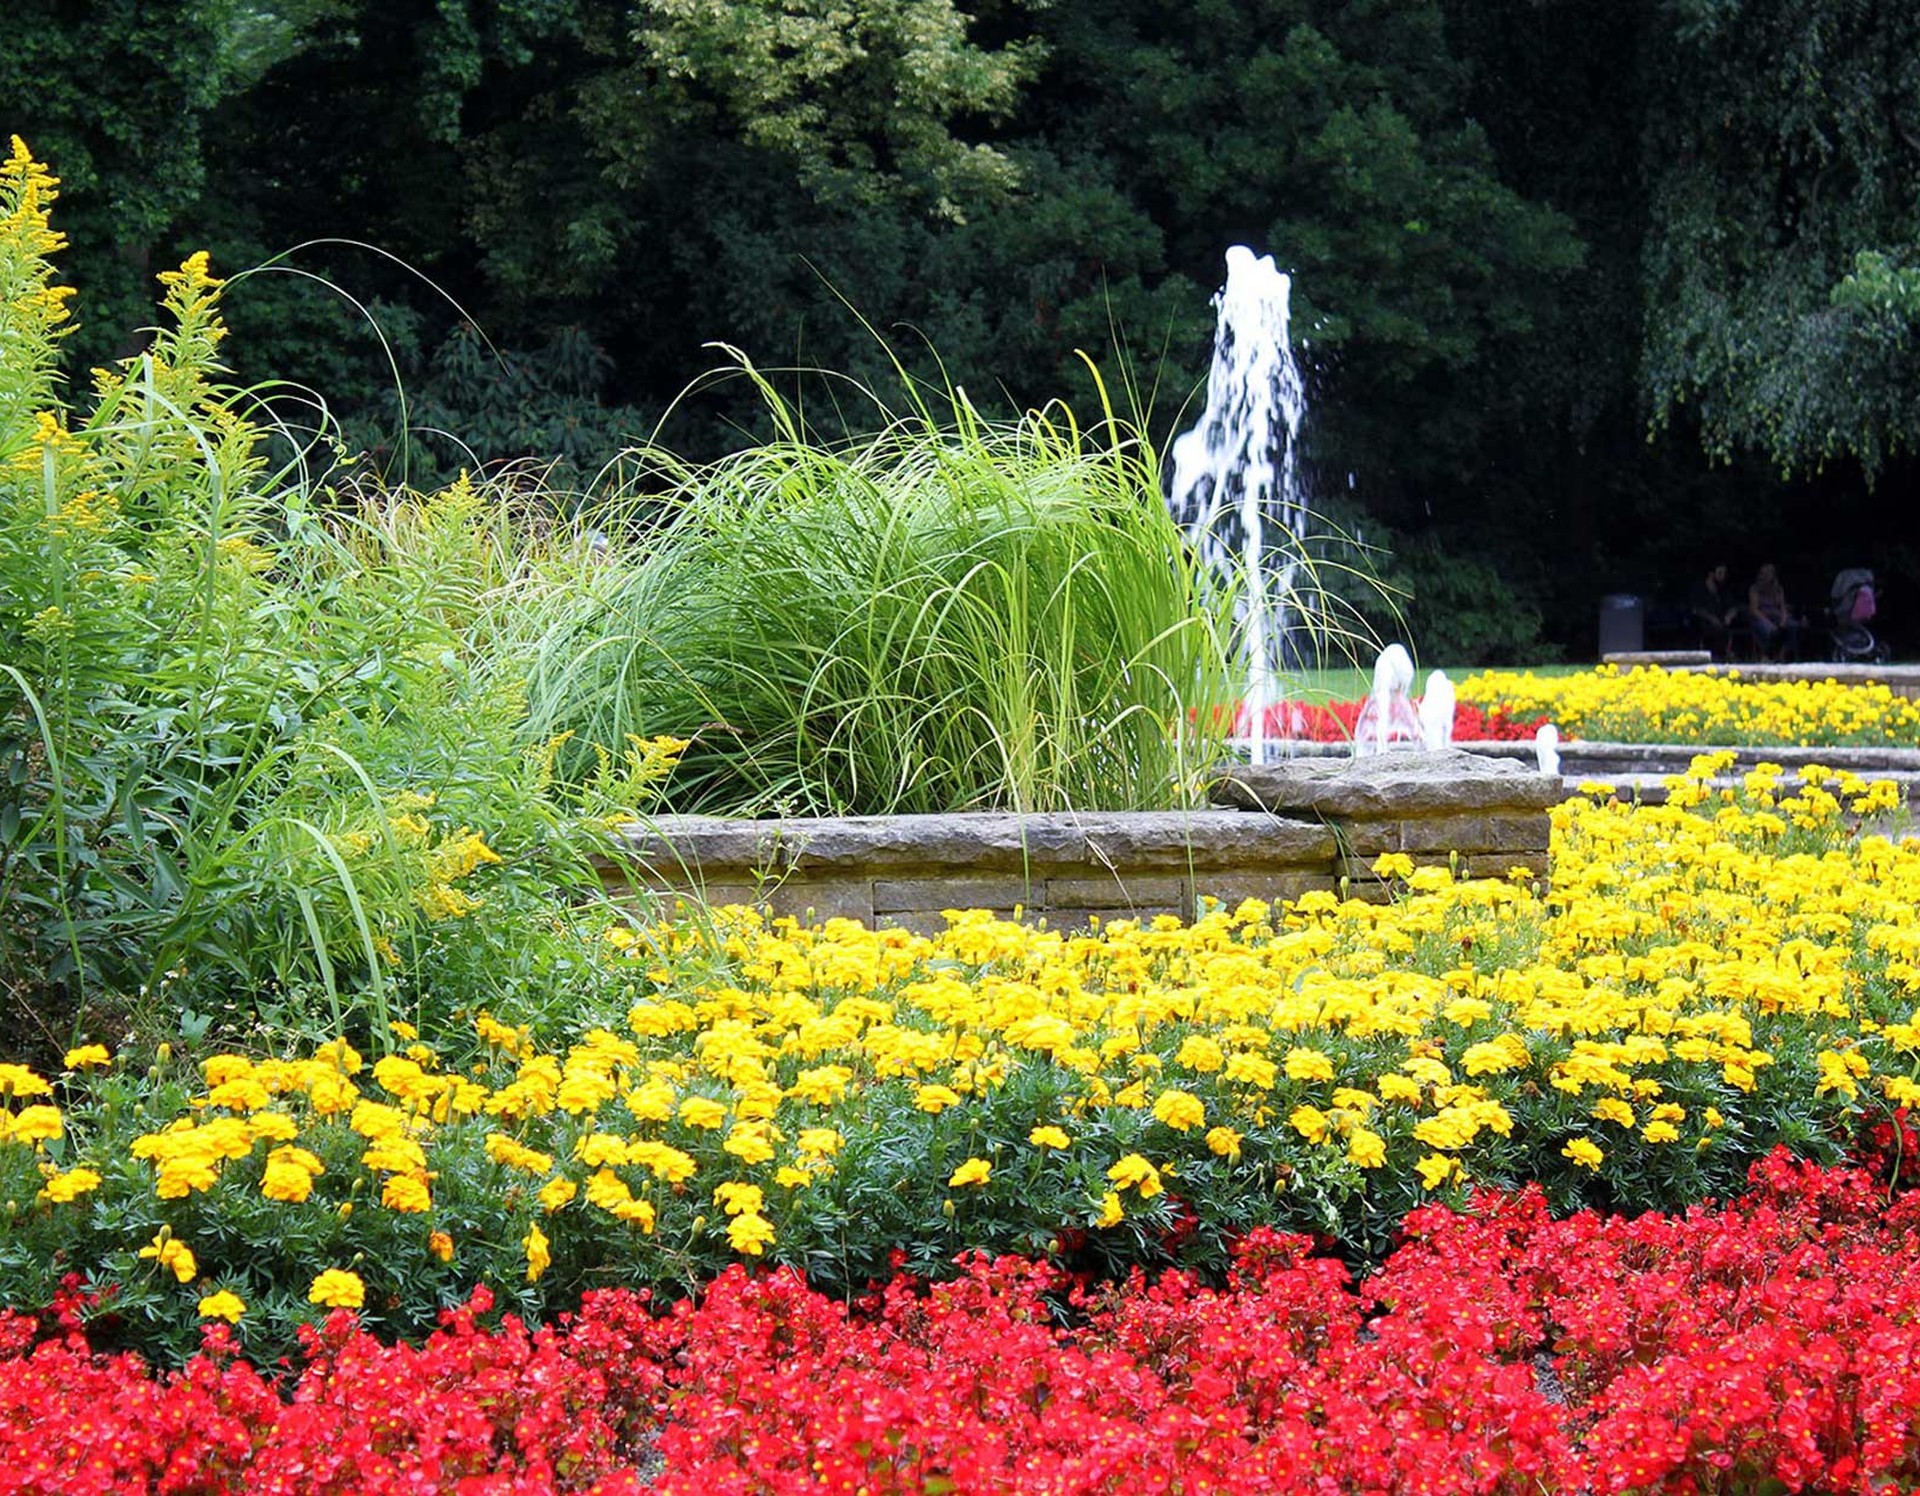 Zahlreiche Blumen zieren die Blumenbeete an den Springbrunnen des Stadtgartens Gelsenkirchen.